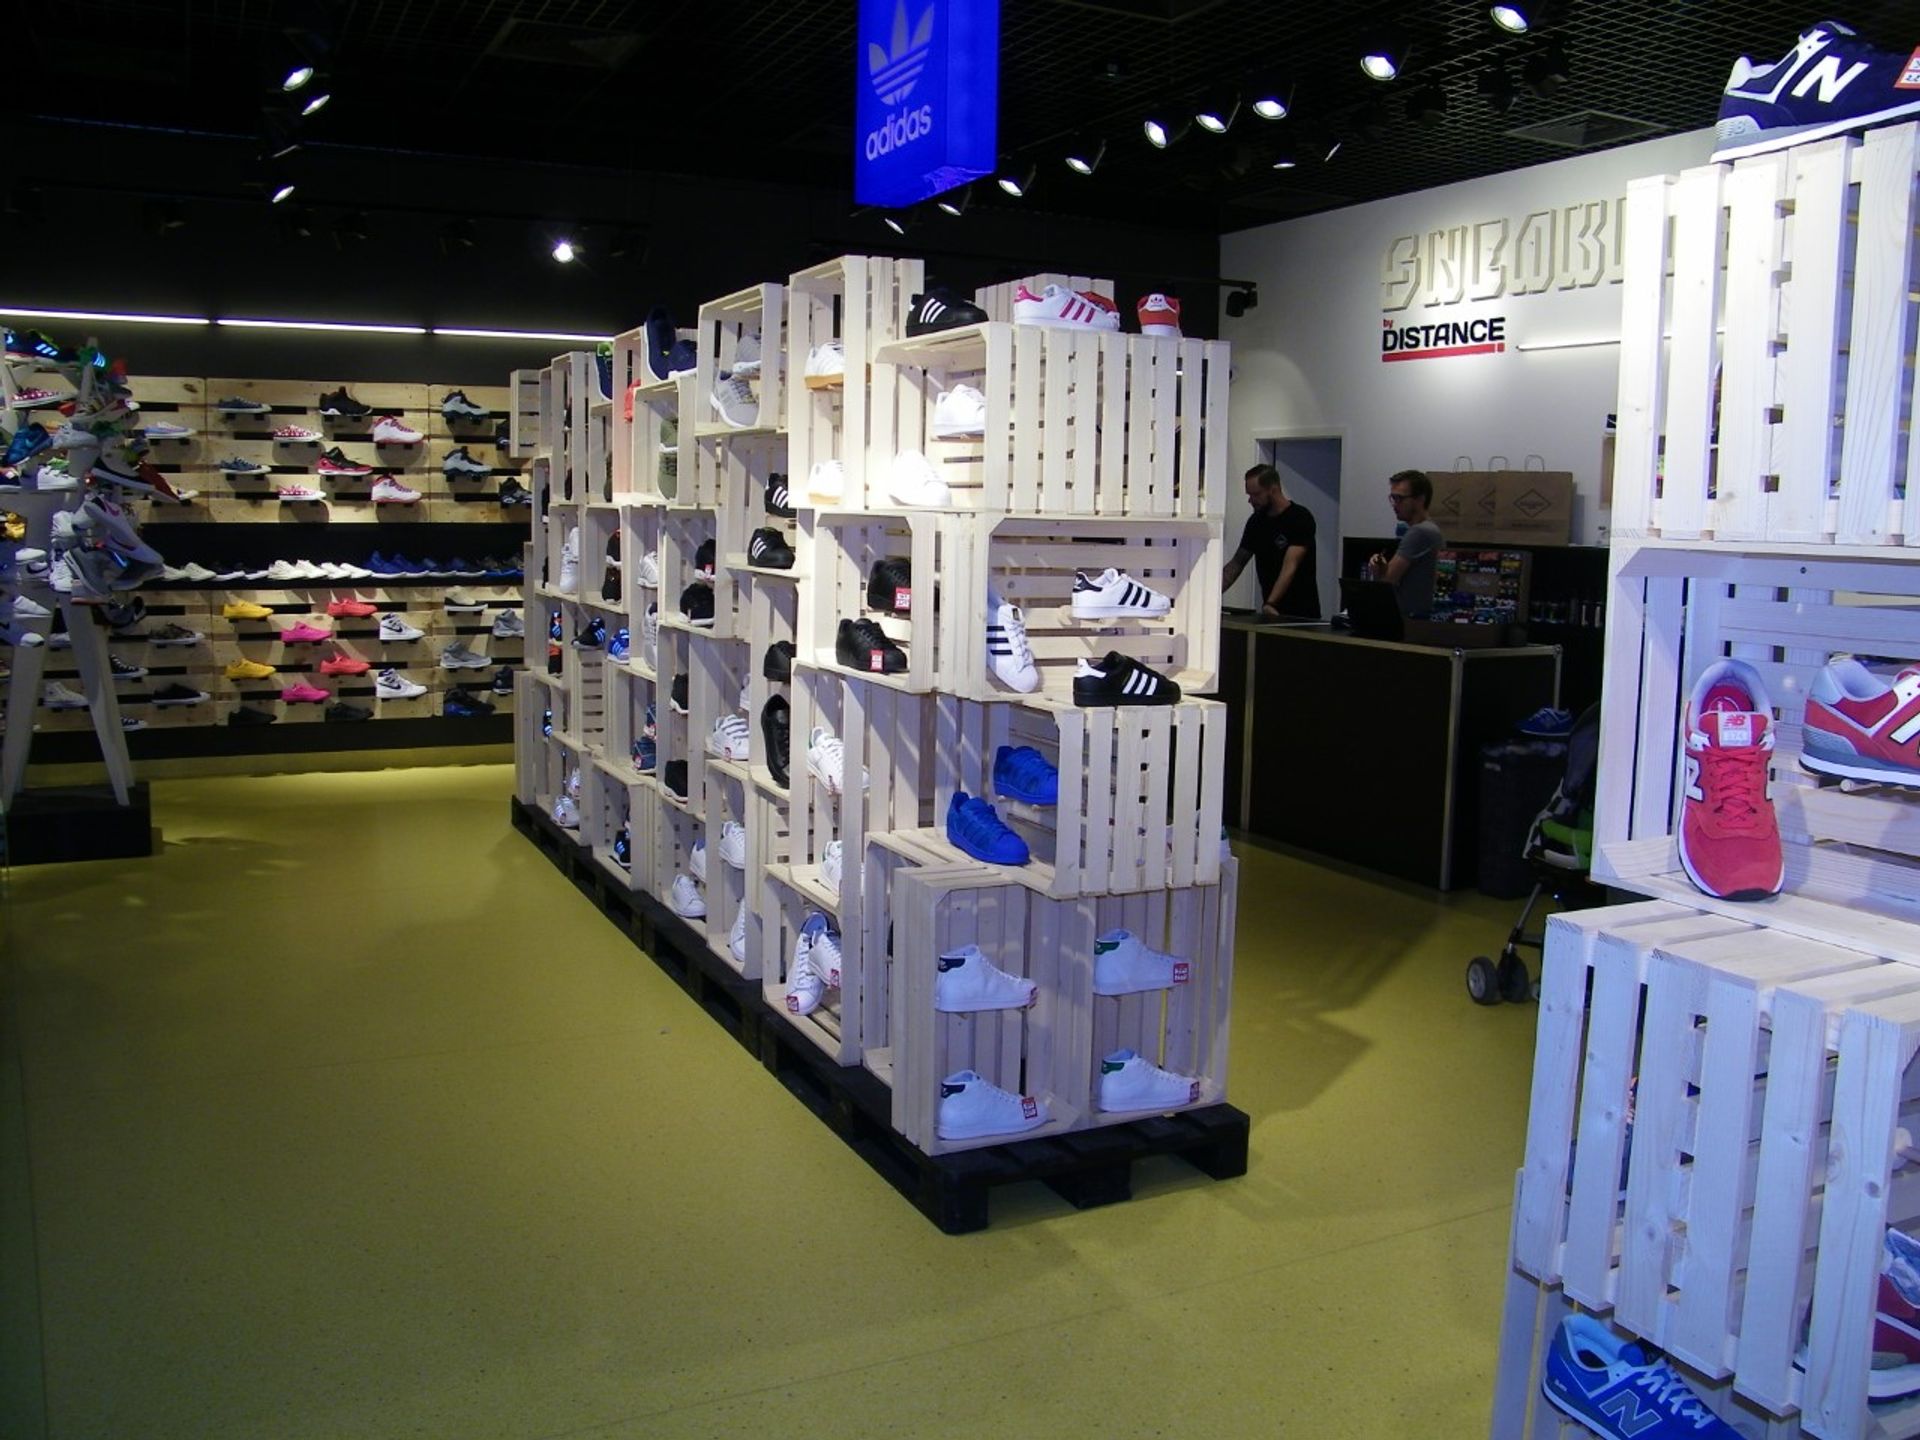  Sklep Sneakers by Distance otworzył się w Galerii Leszno